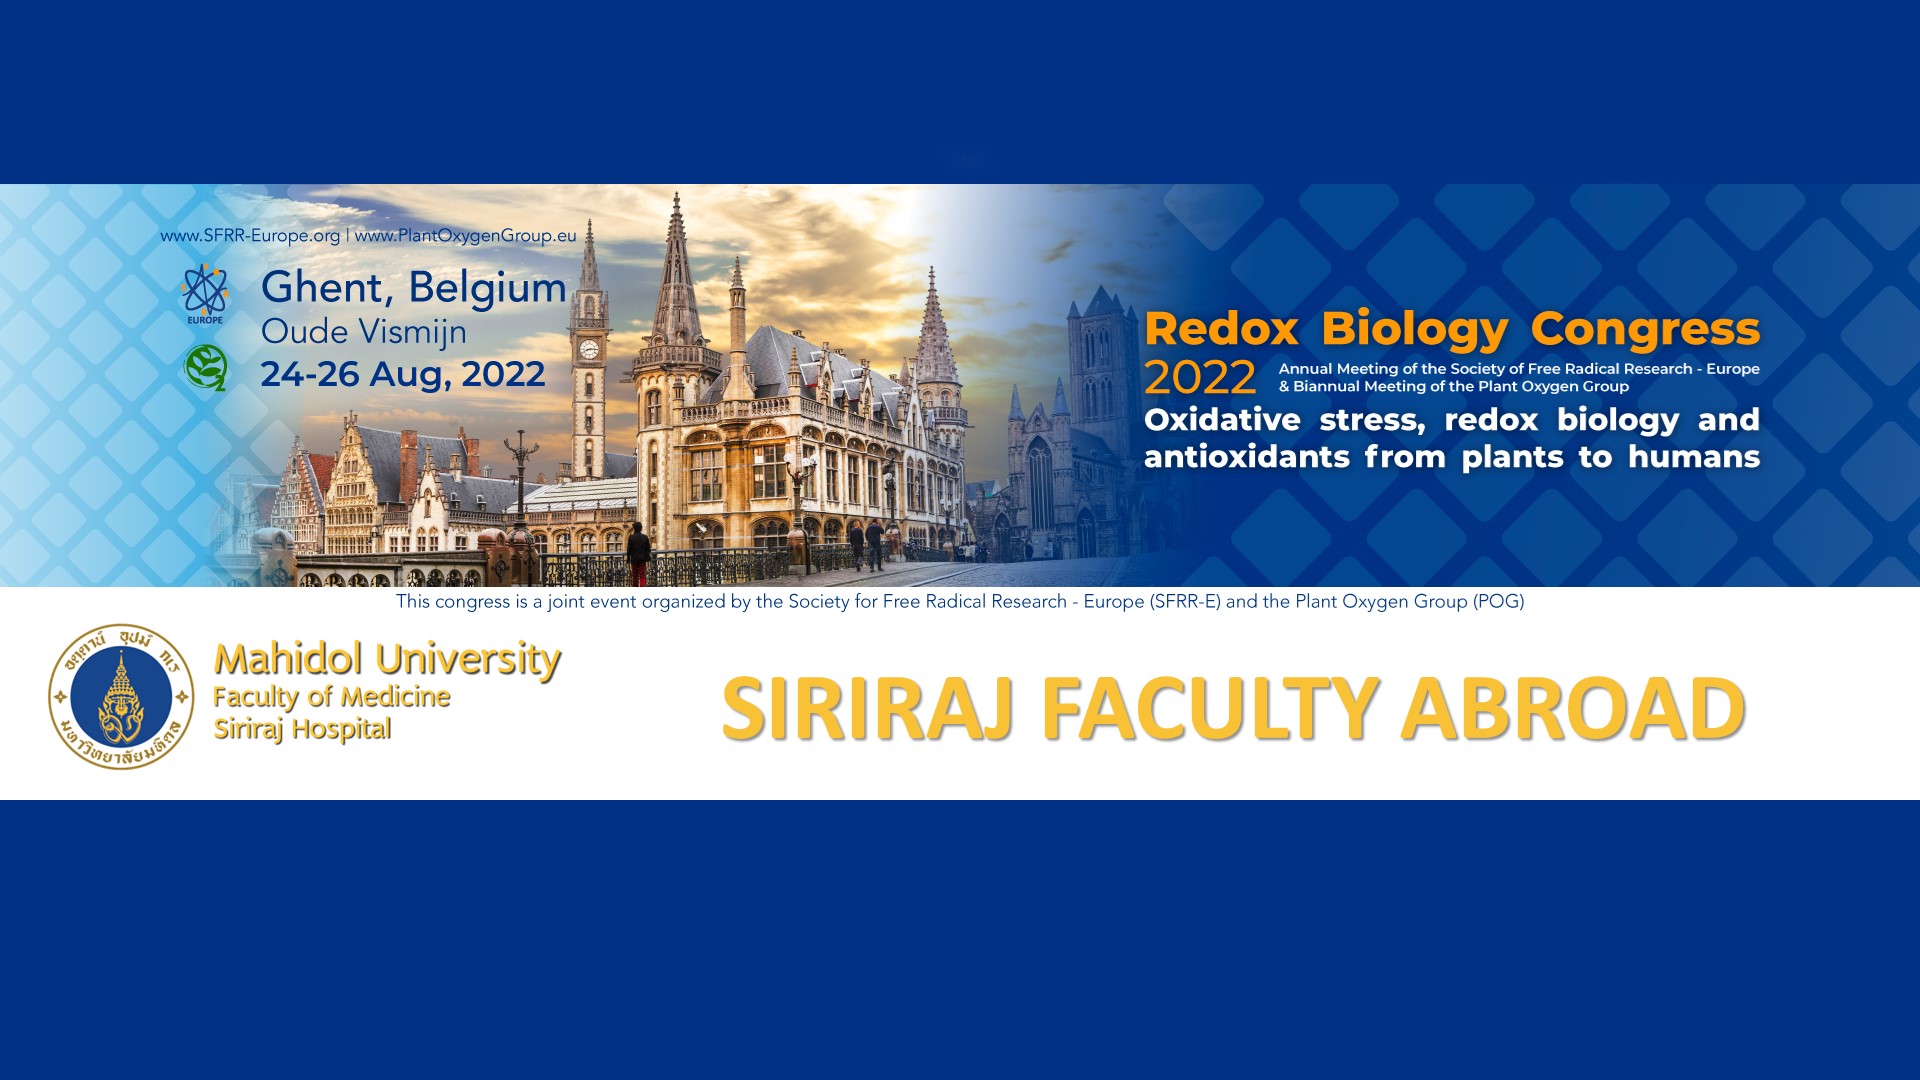 Siriraj Faculty Abroad at Redox Biology Congress 2022